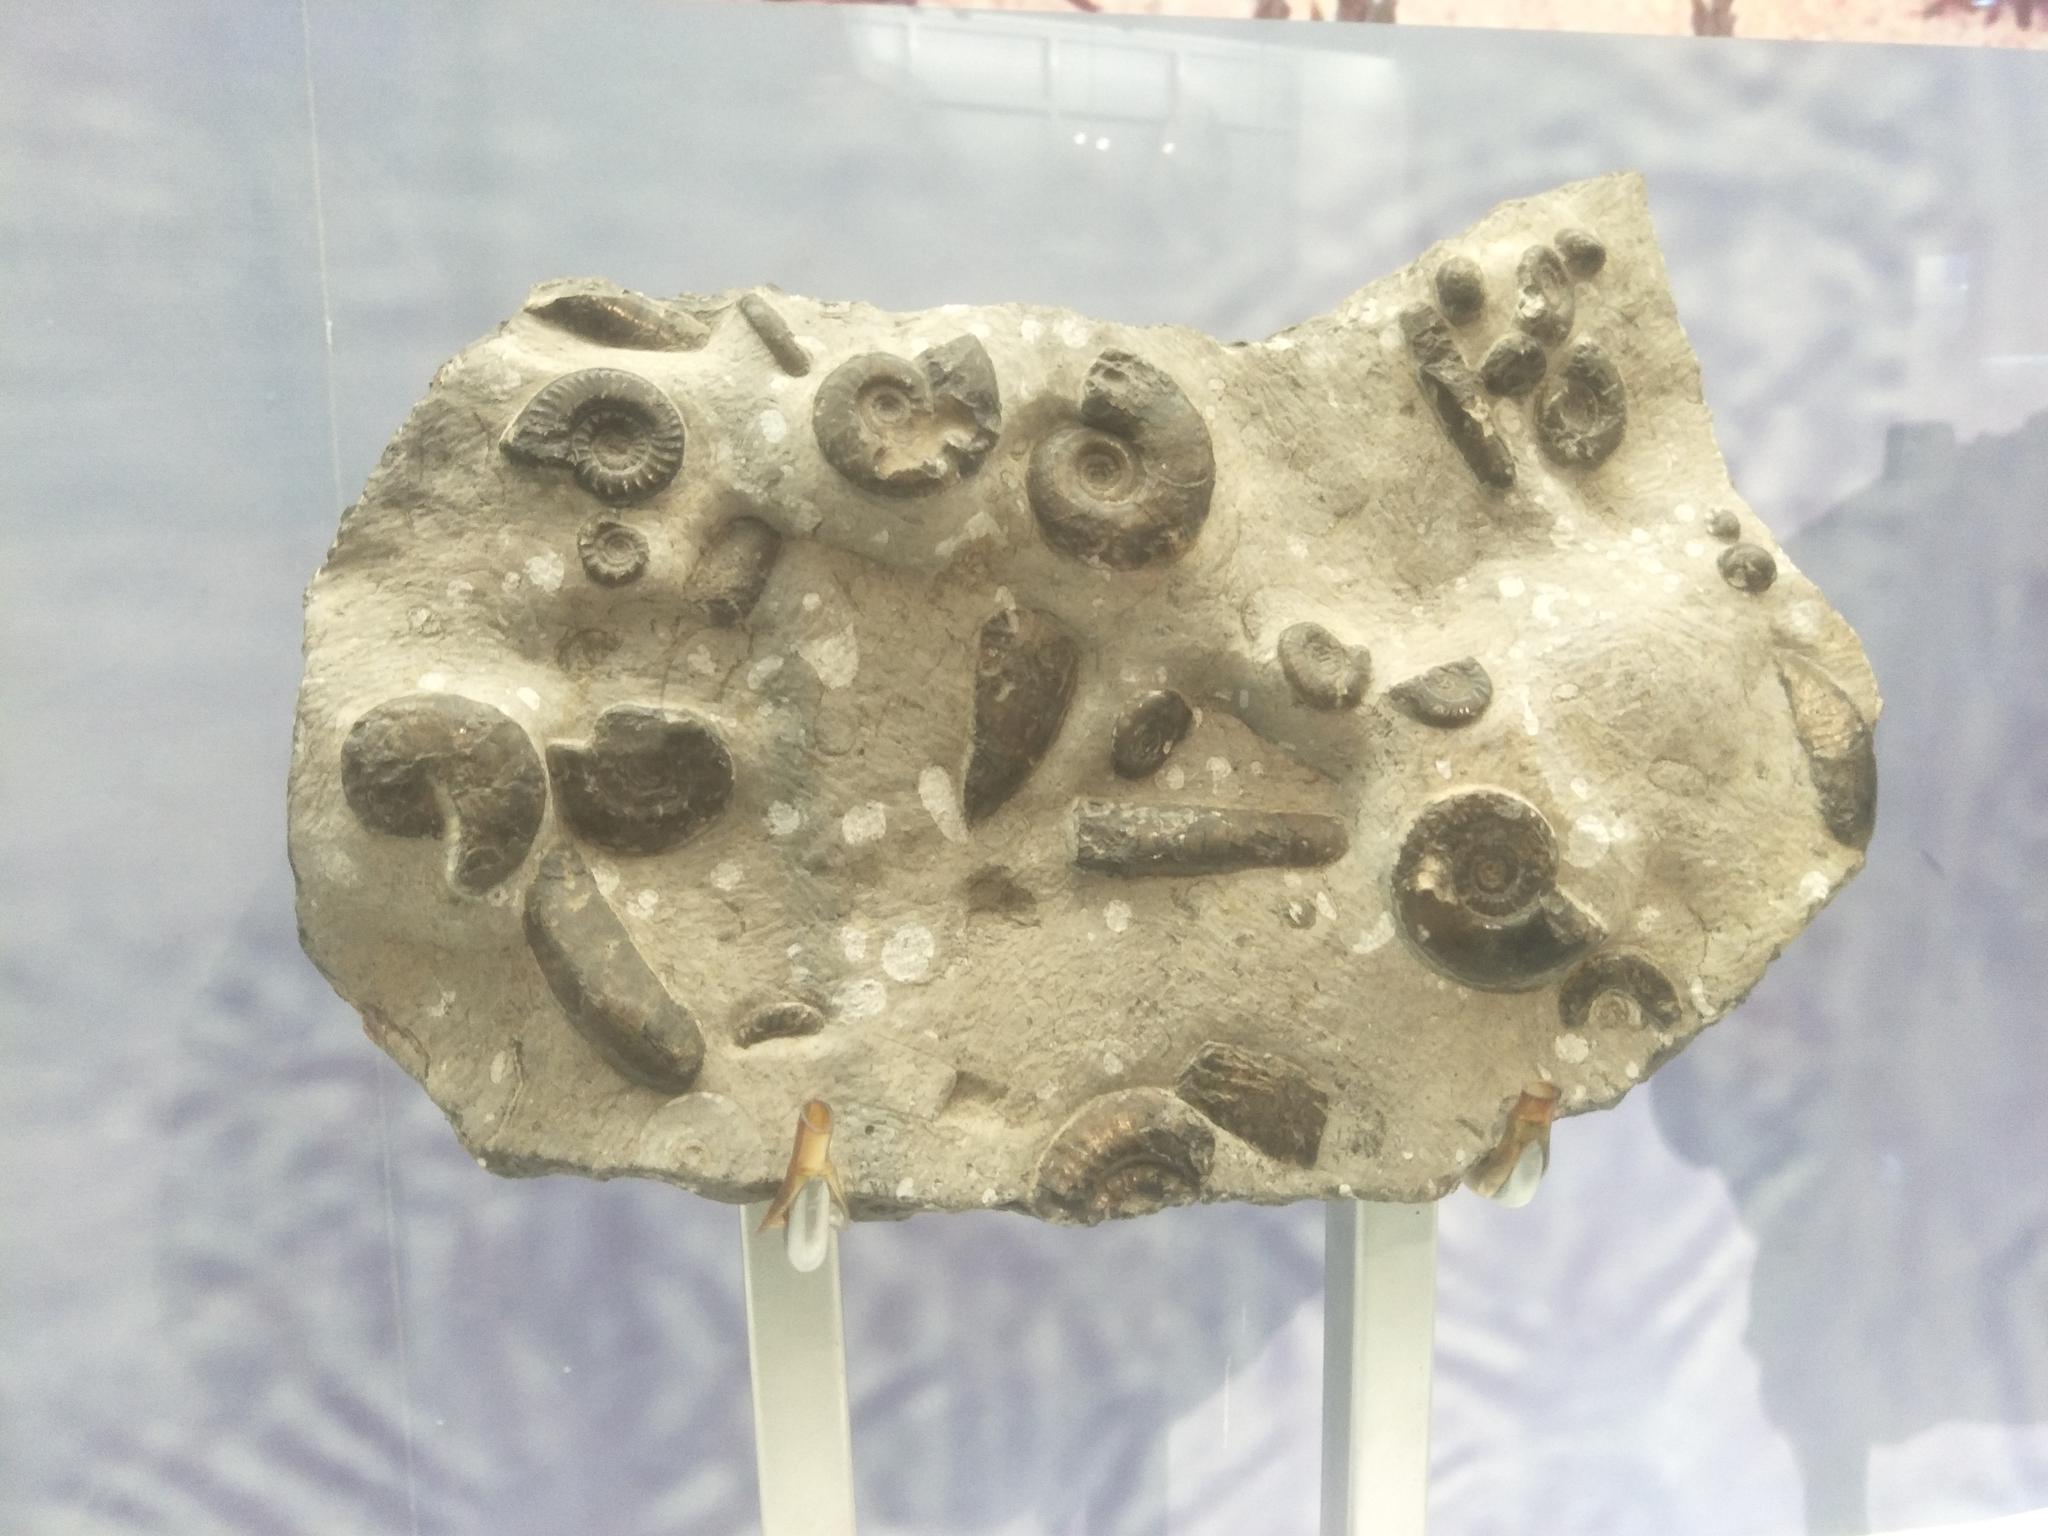 大连星海广场贝壳博物馆贝壳类生物化石,原创摄影